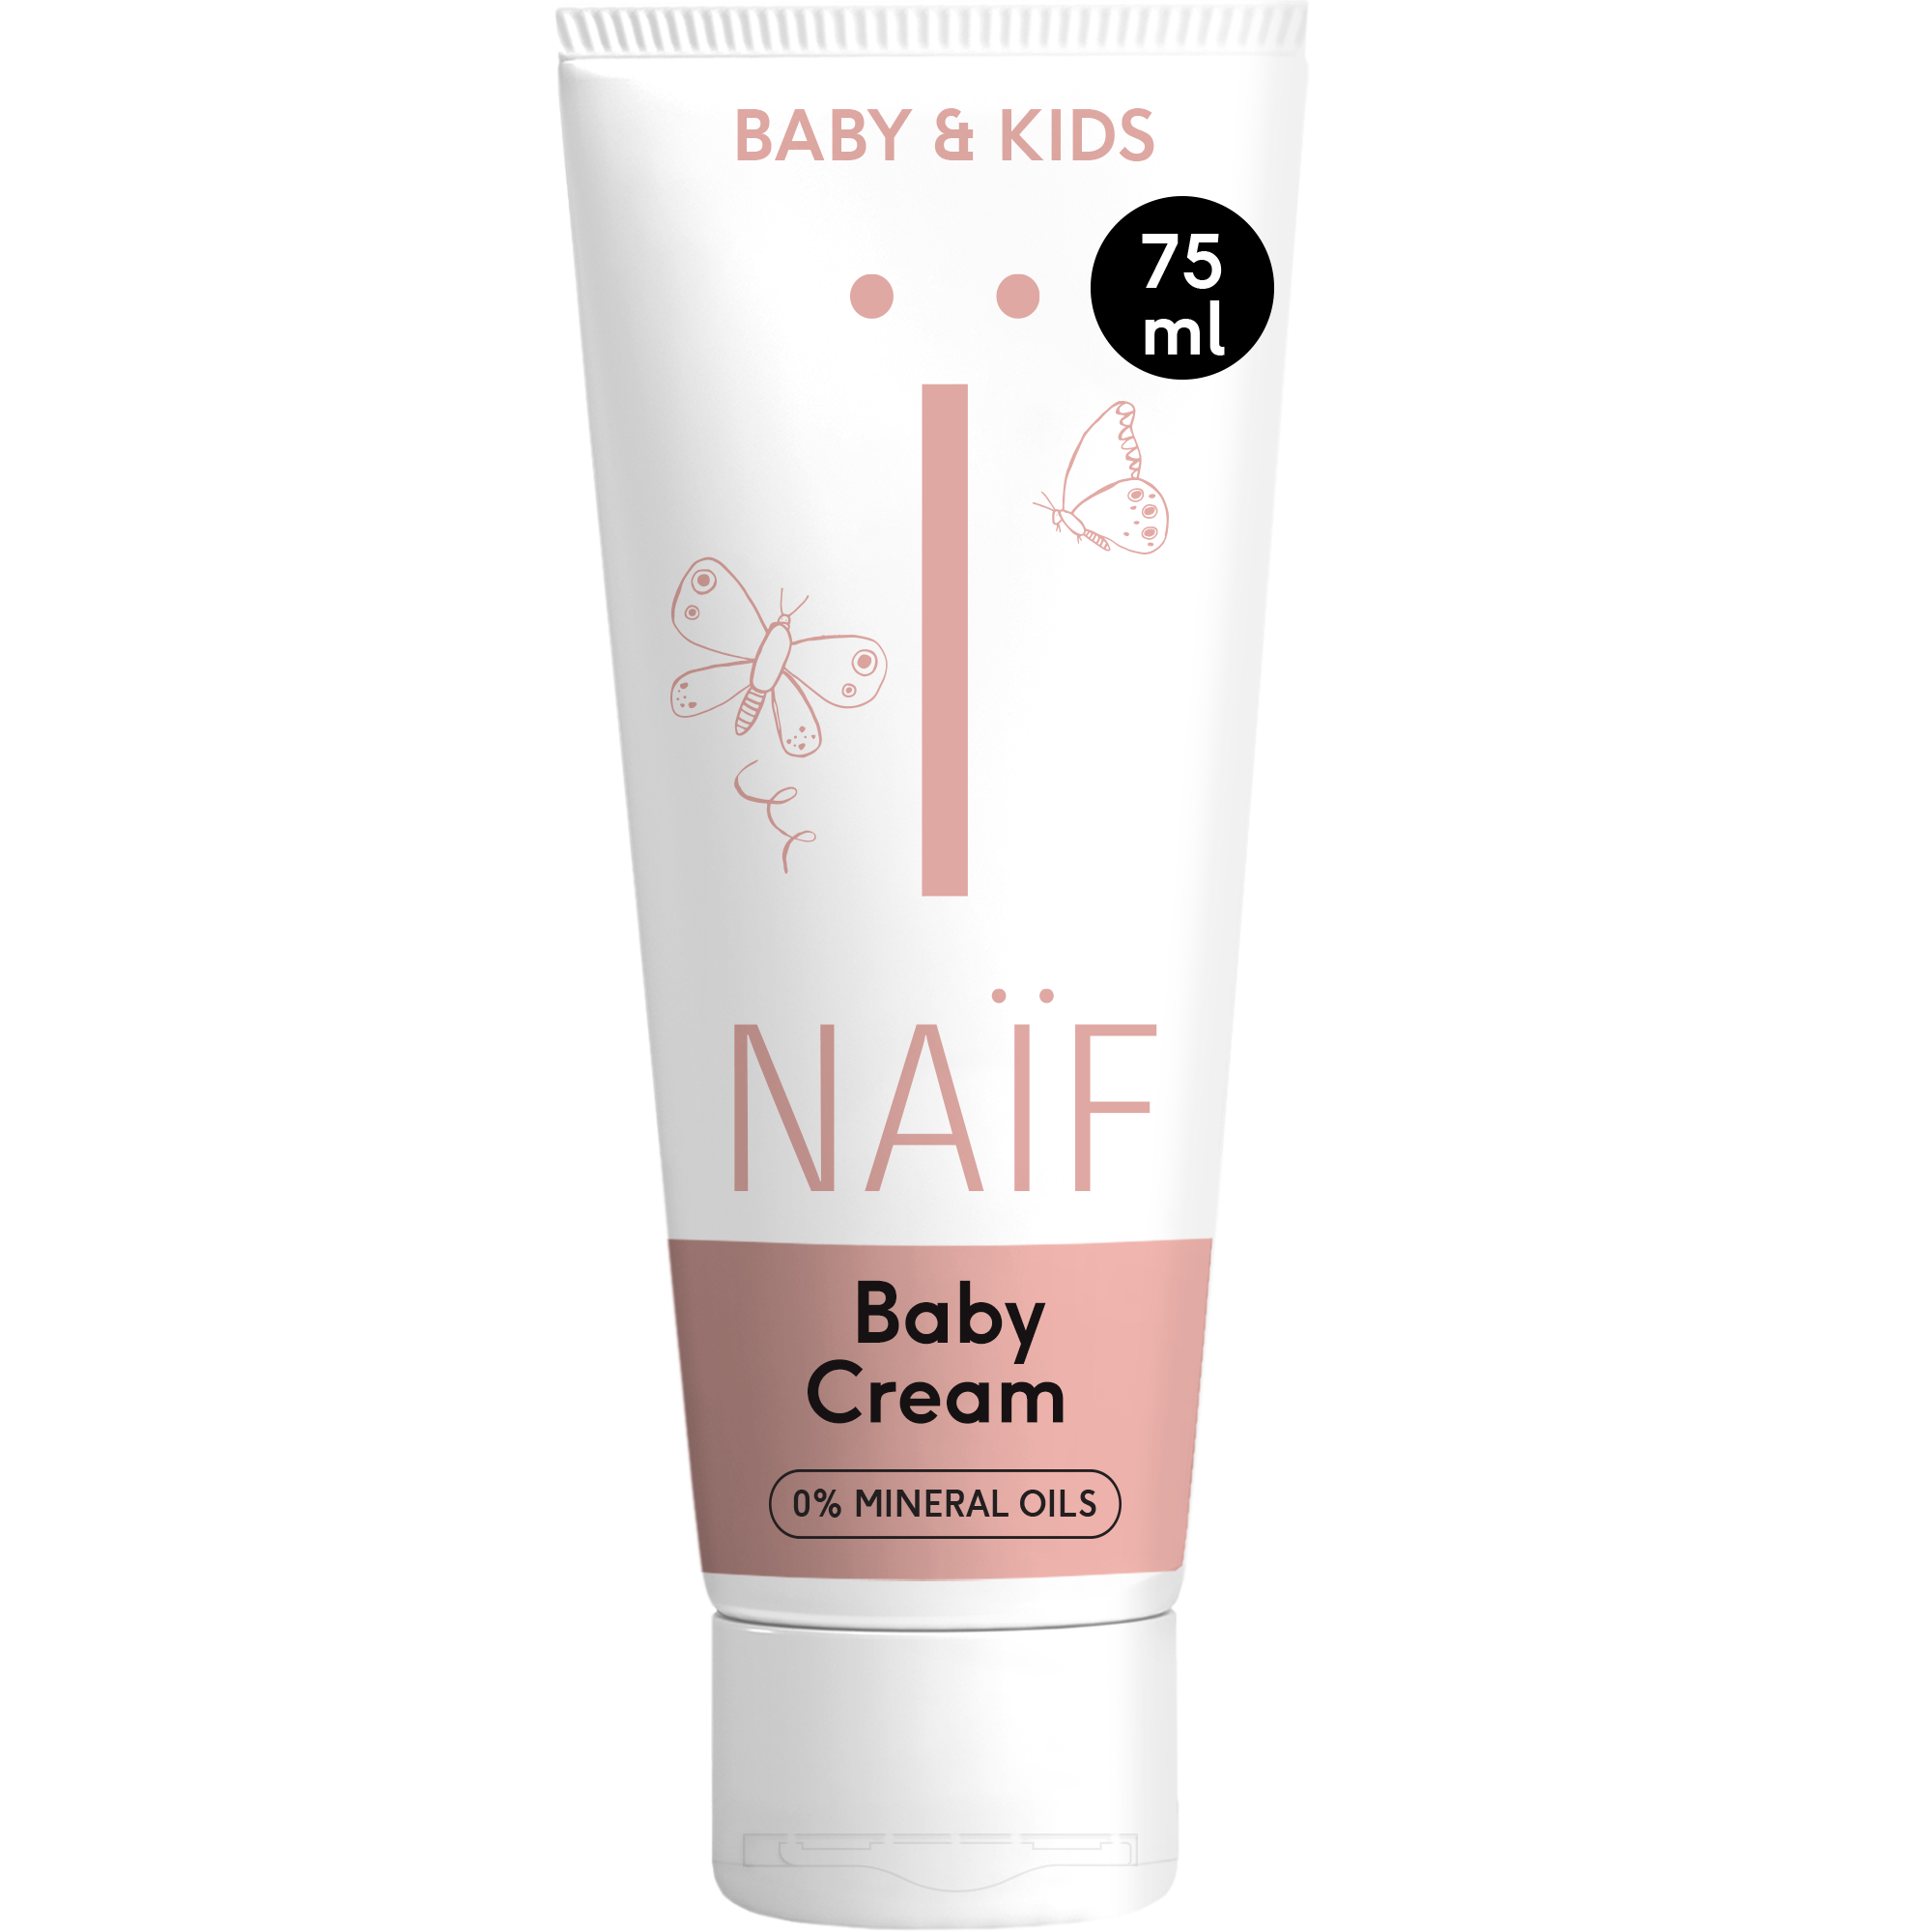 Nurturing Cream for Baby & Kids